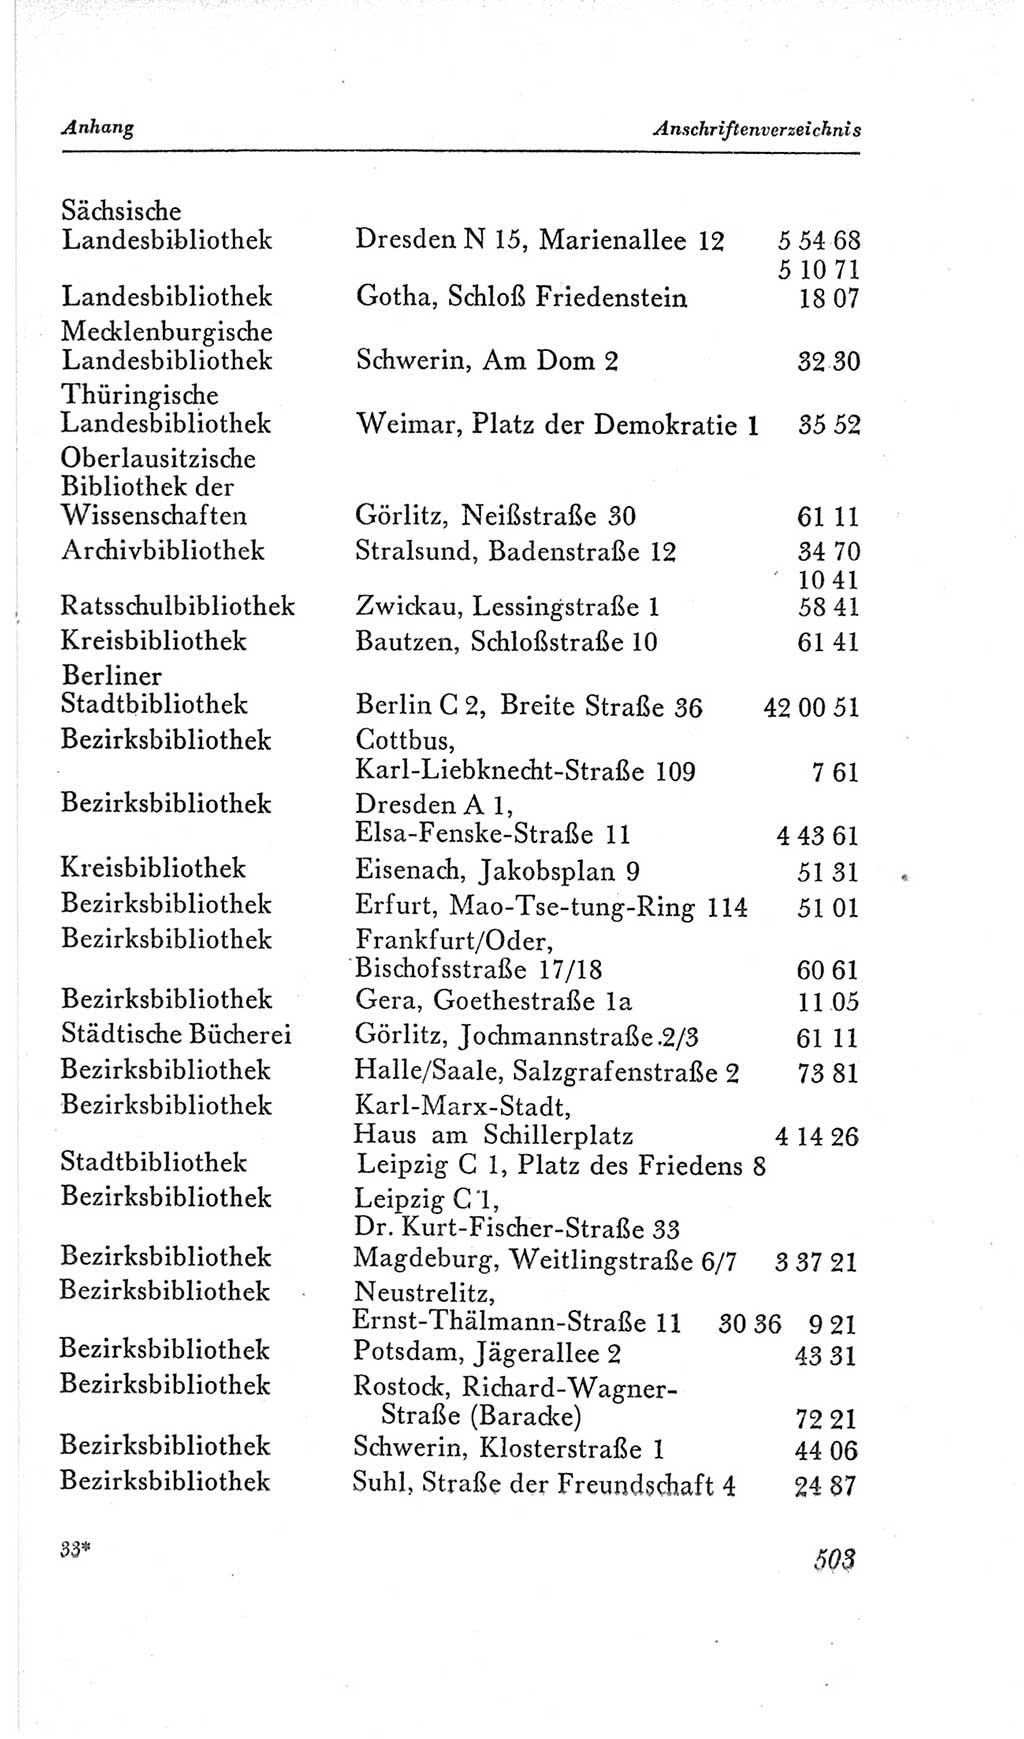 Handbuch der Volkskammer (VK) der Deutschen Demokratischen Republik (DDR), 2. Wahlperiode 1954-1958, Seite 503 (Hdb. VK. DDR, 2. WP. 1954-1958, S. 503)